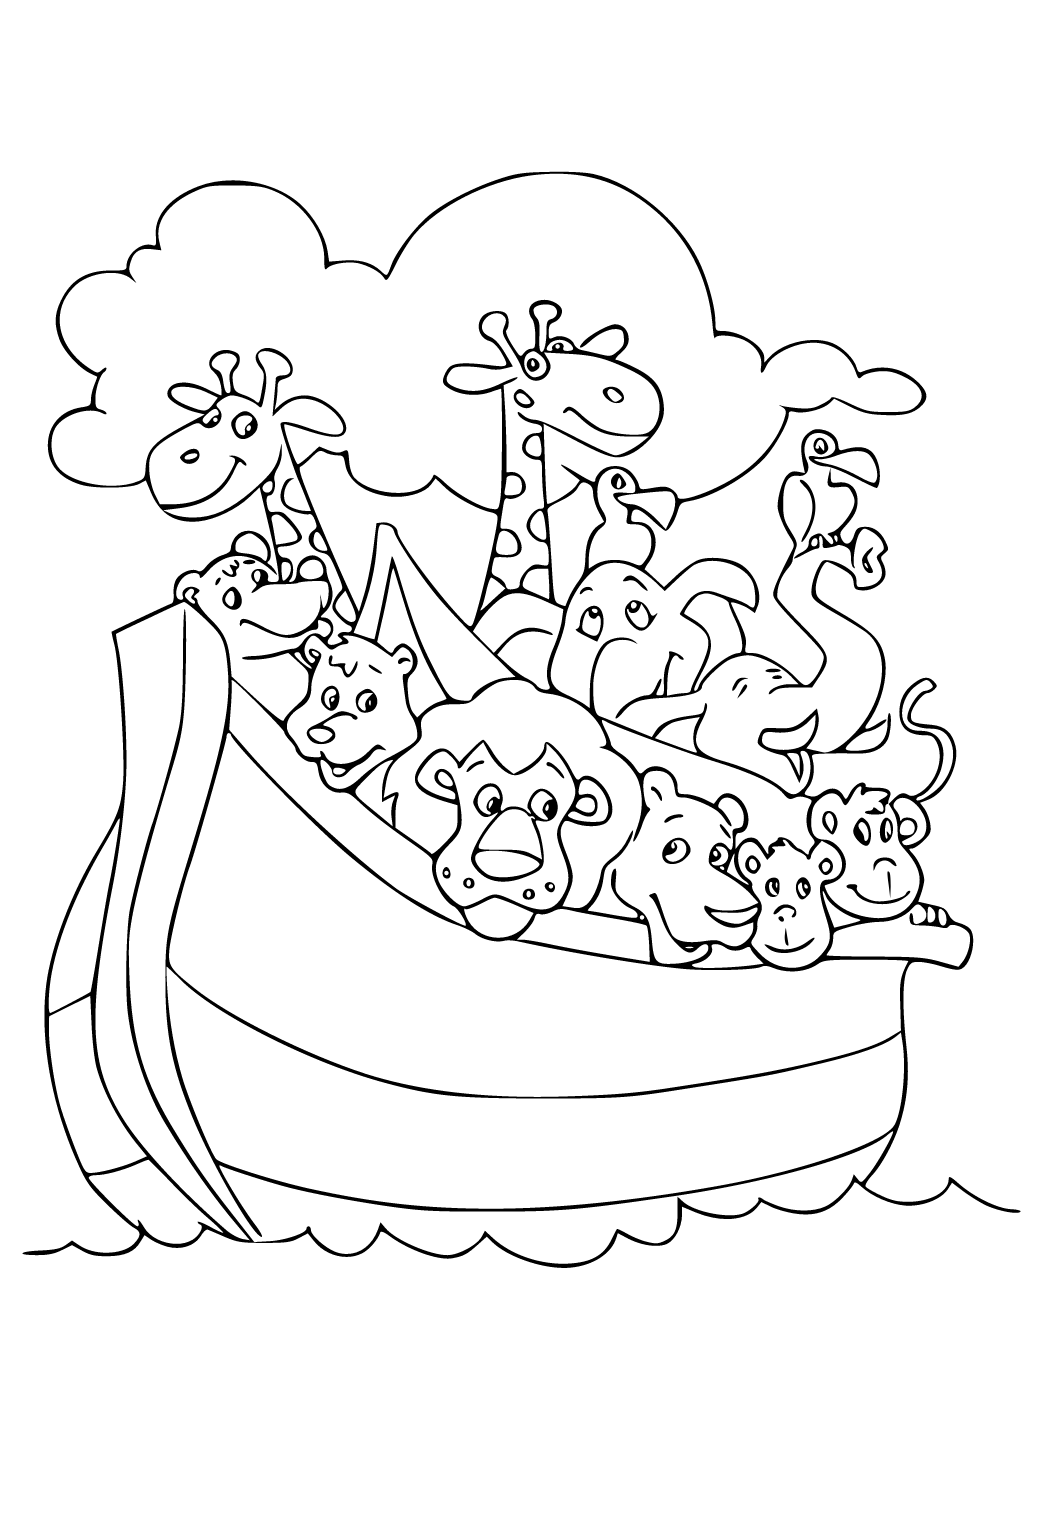 De Ark van Noah